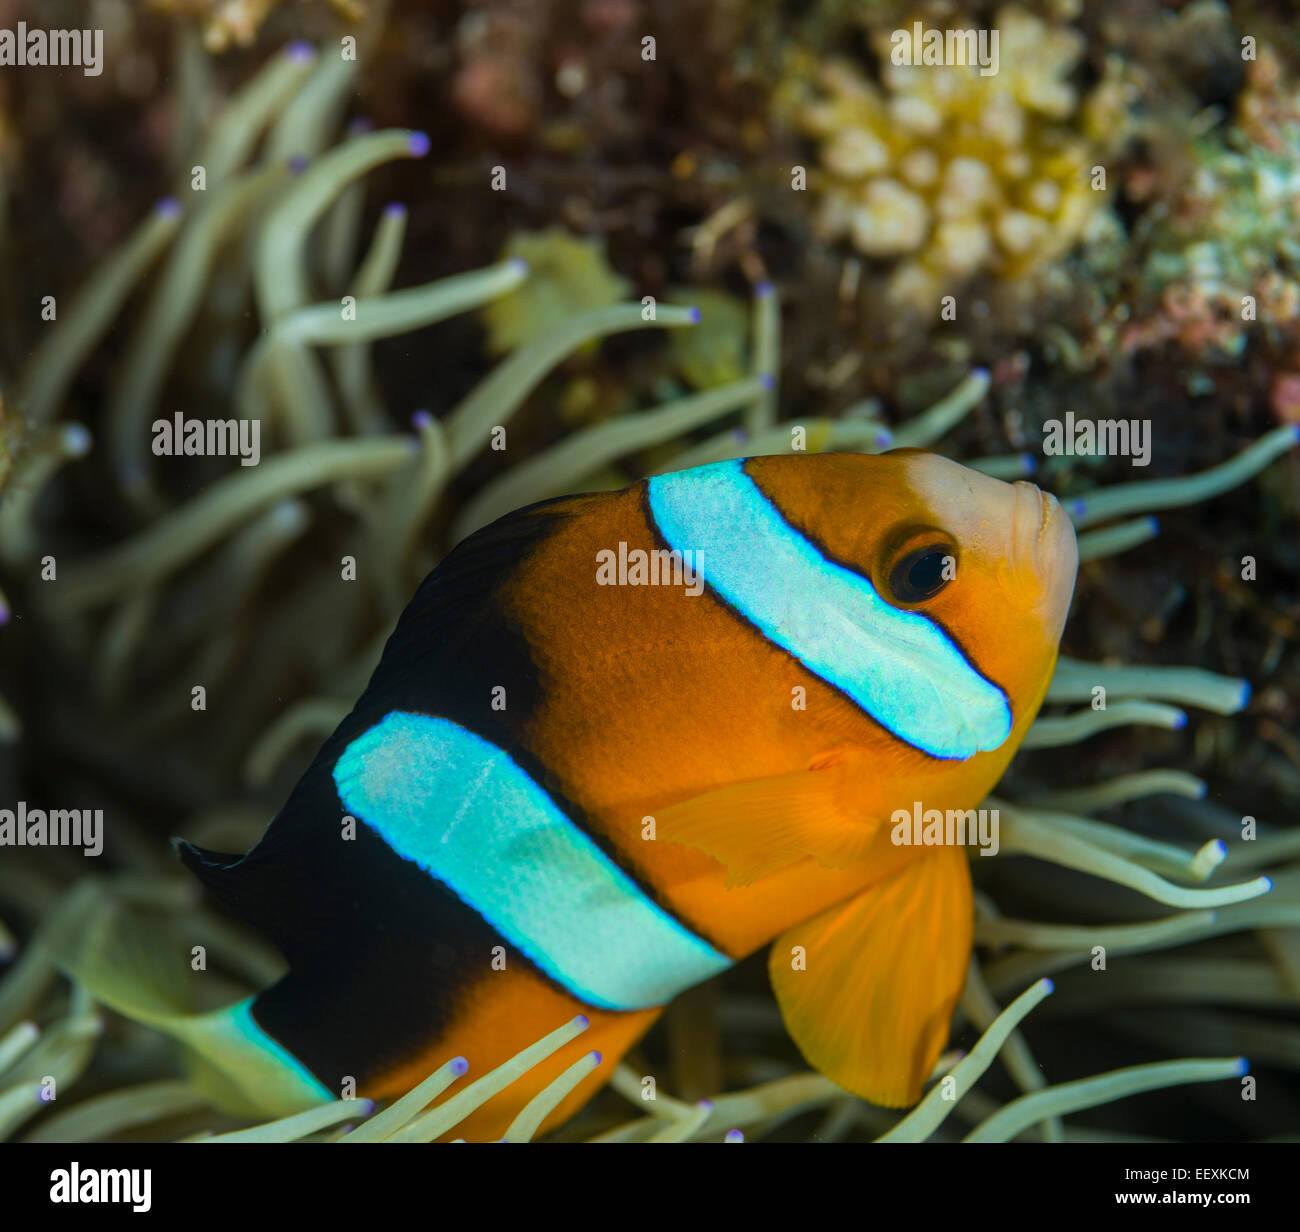 Anemonenfische spähen aus einer anemone Stockfoto